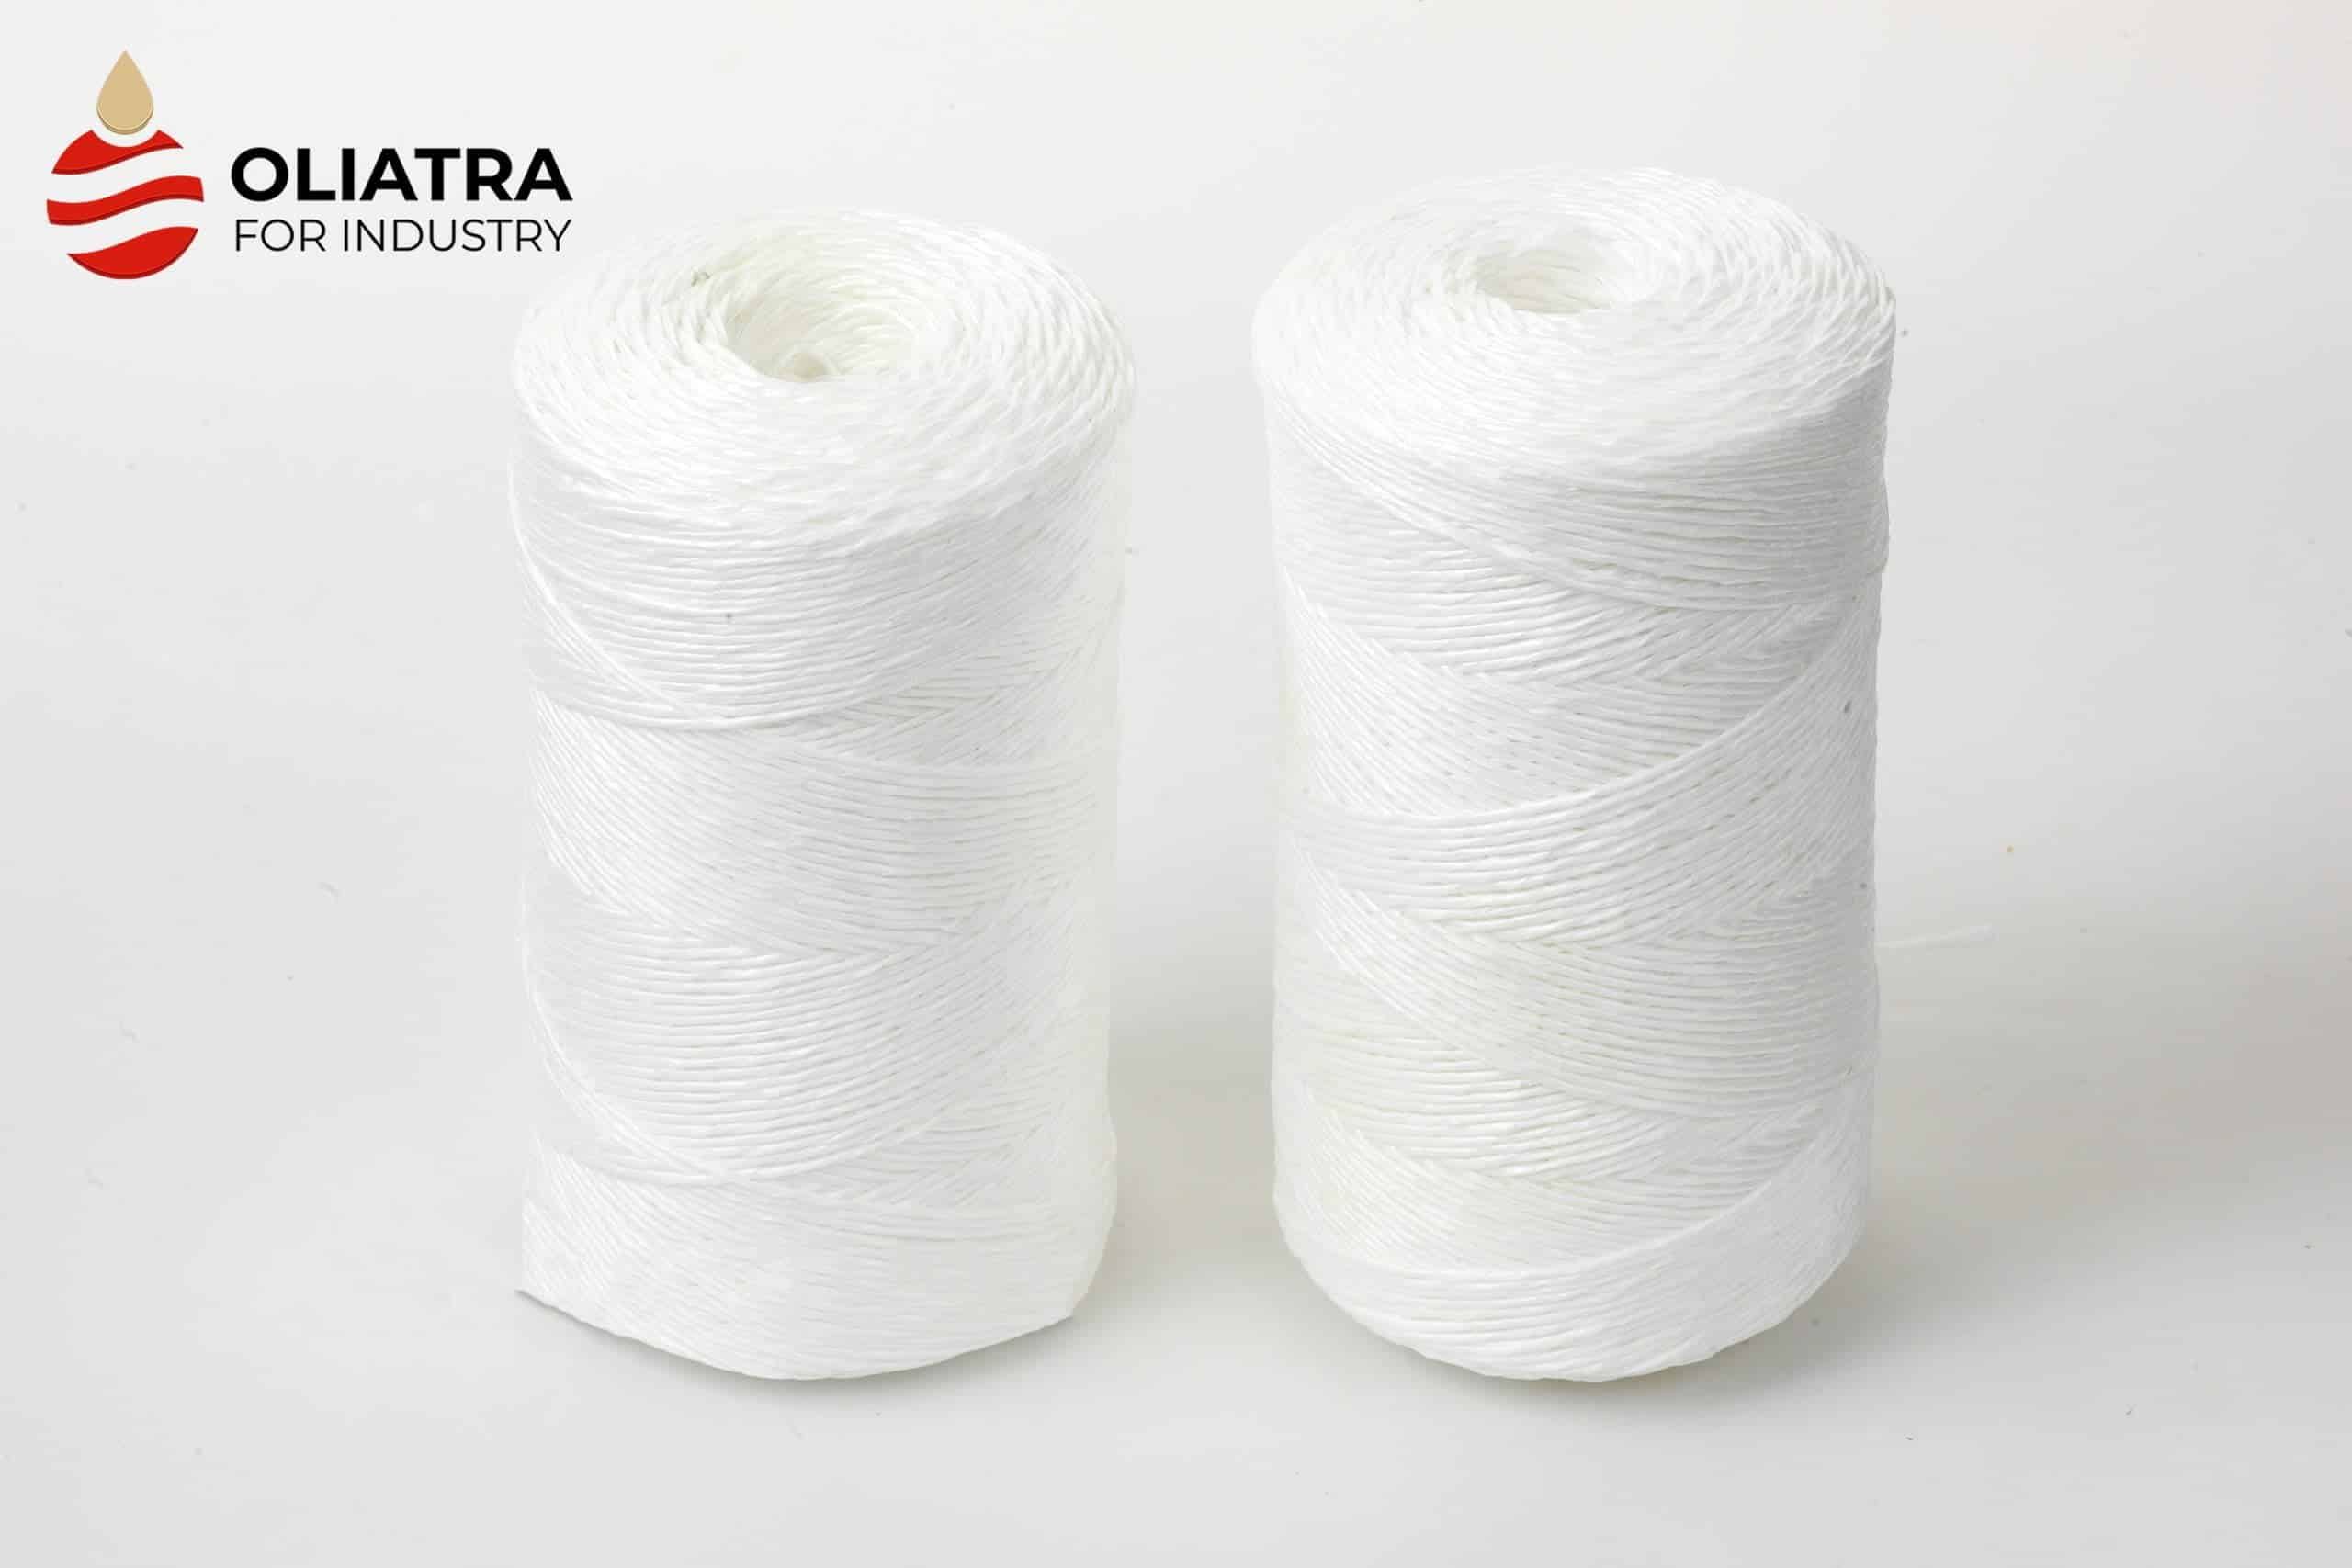 Polypropylene (Raffia) yarn